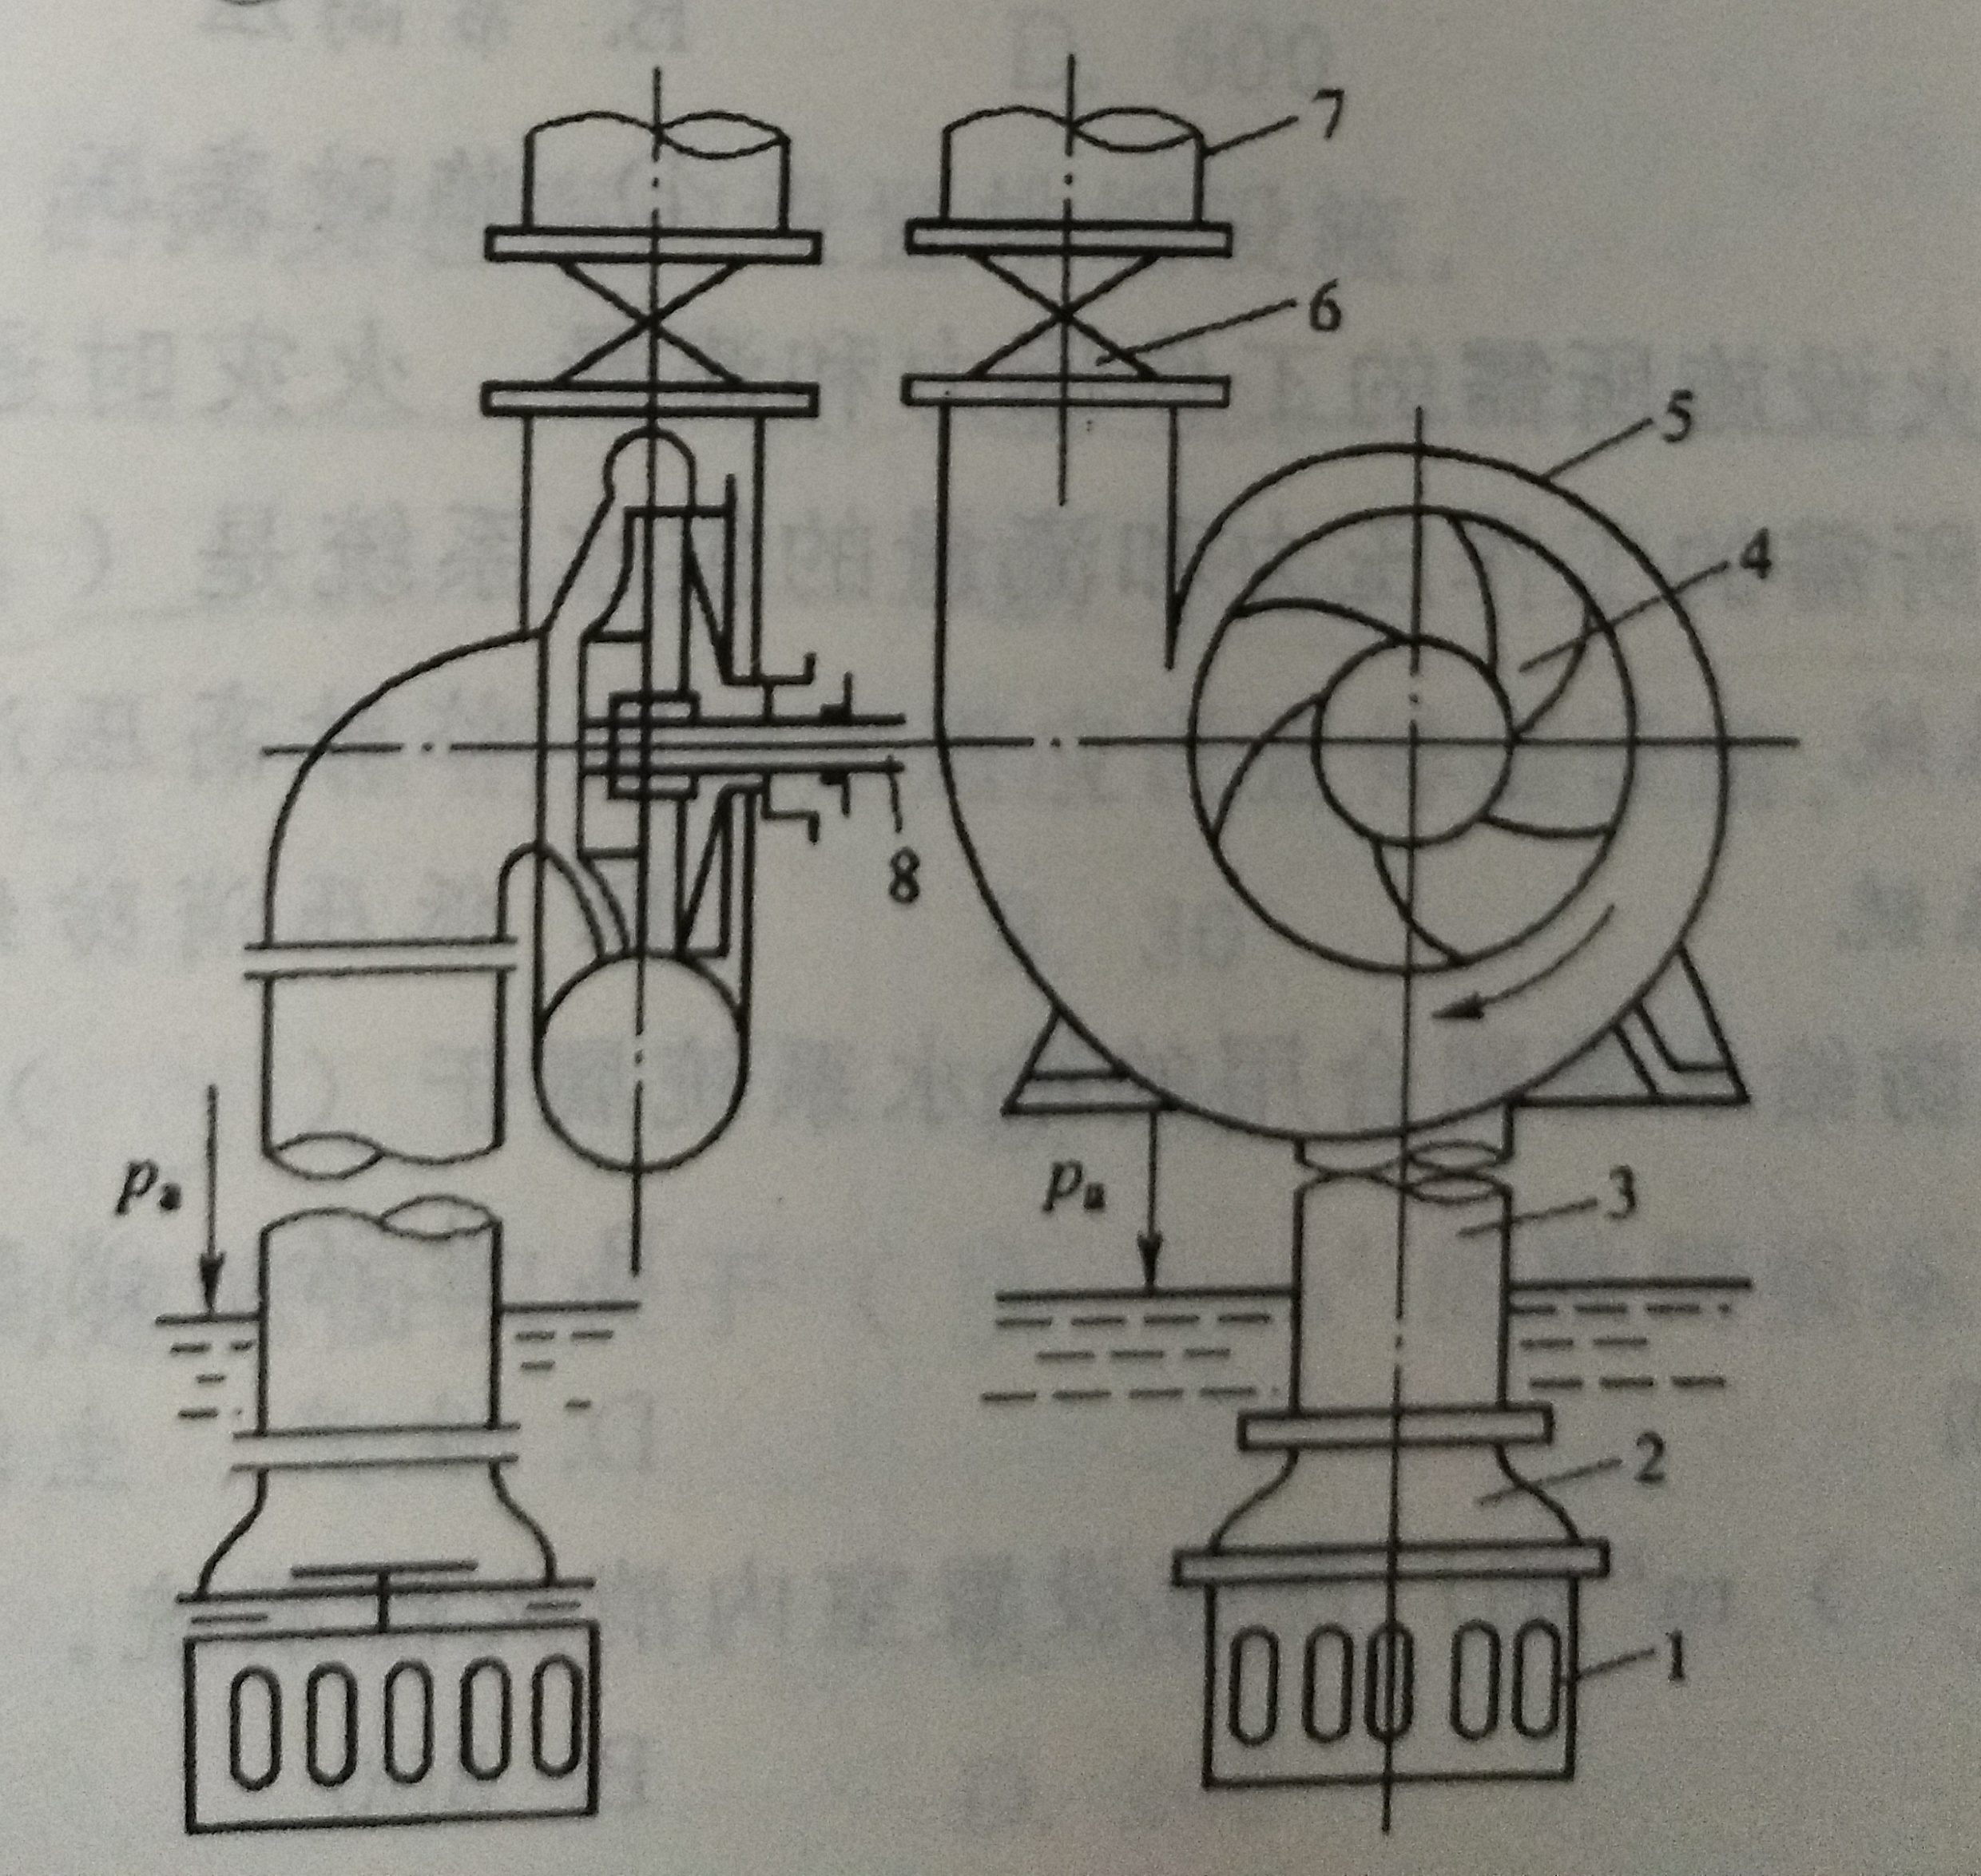 下面离心泵组成示意图中( )是叶轮.